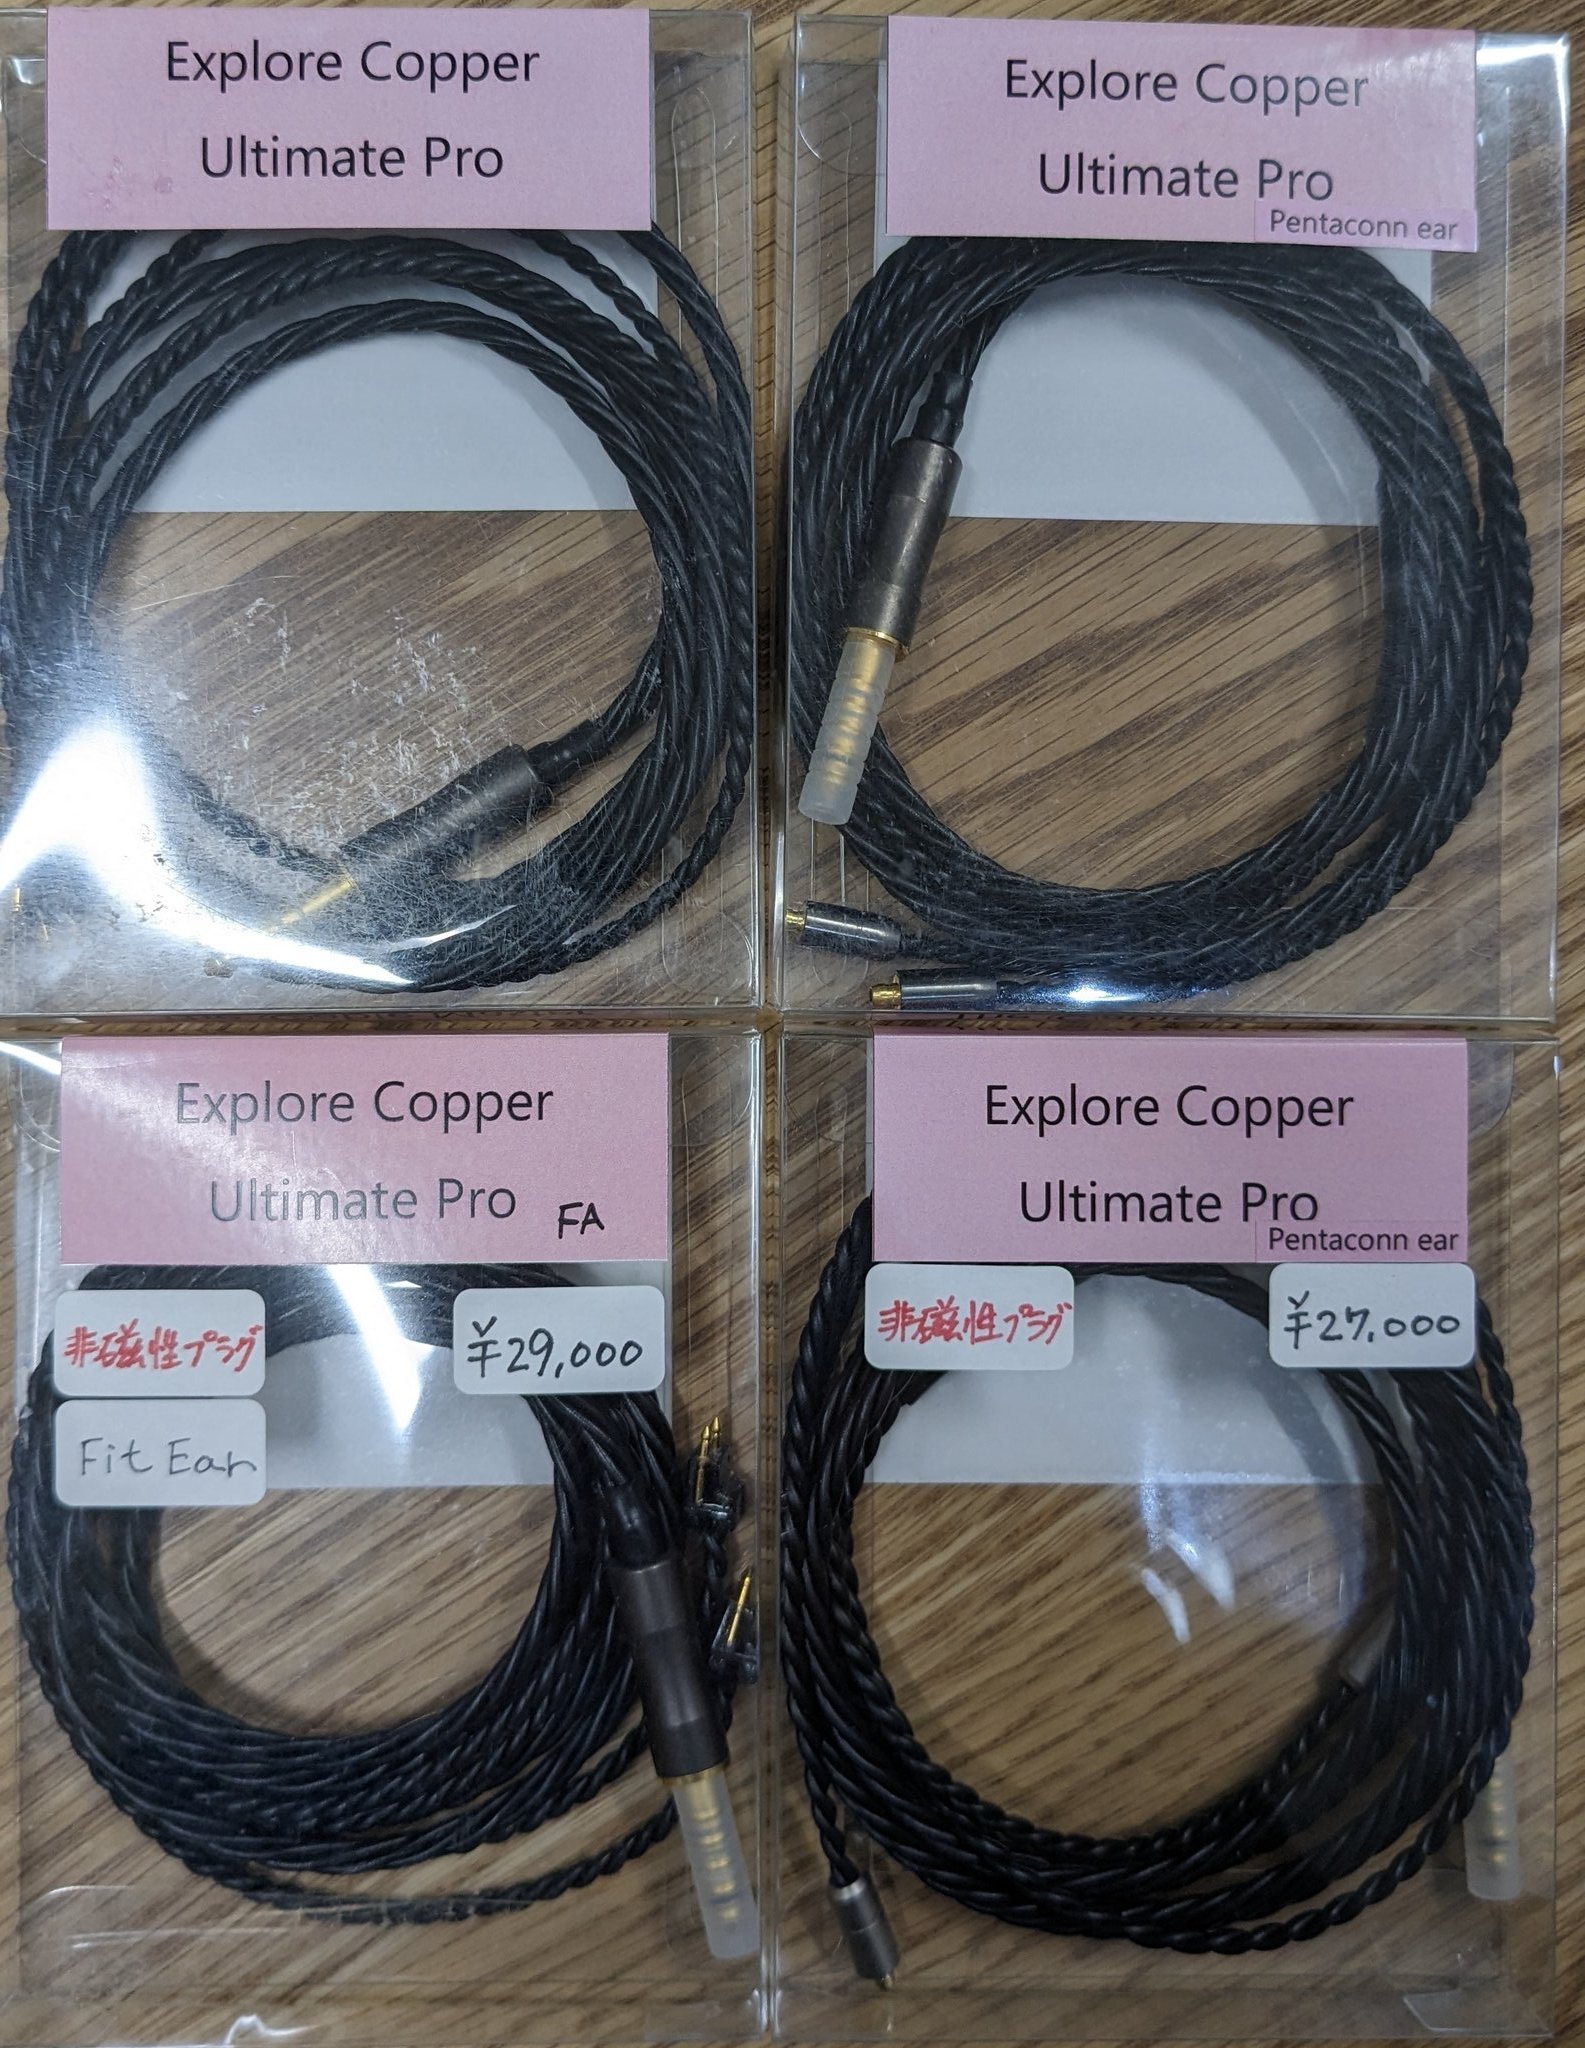 Explore Copper Ultimate Pro 非磁性プラグ型 - ケーブル/シールド